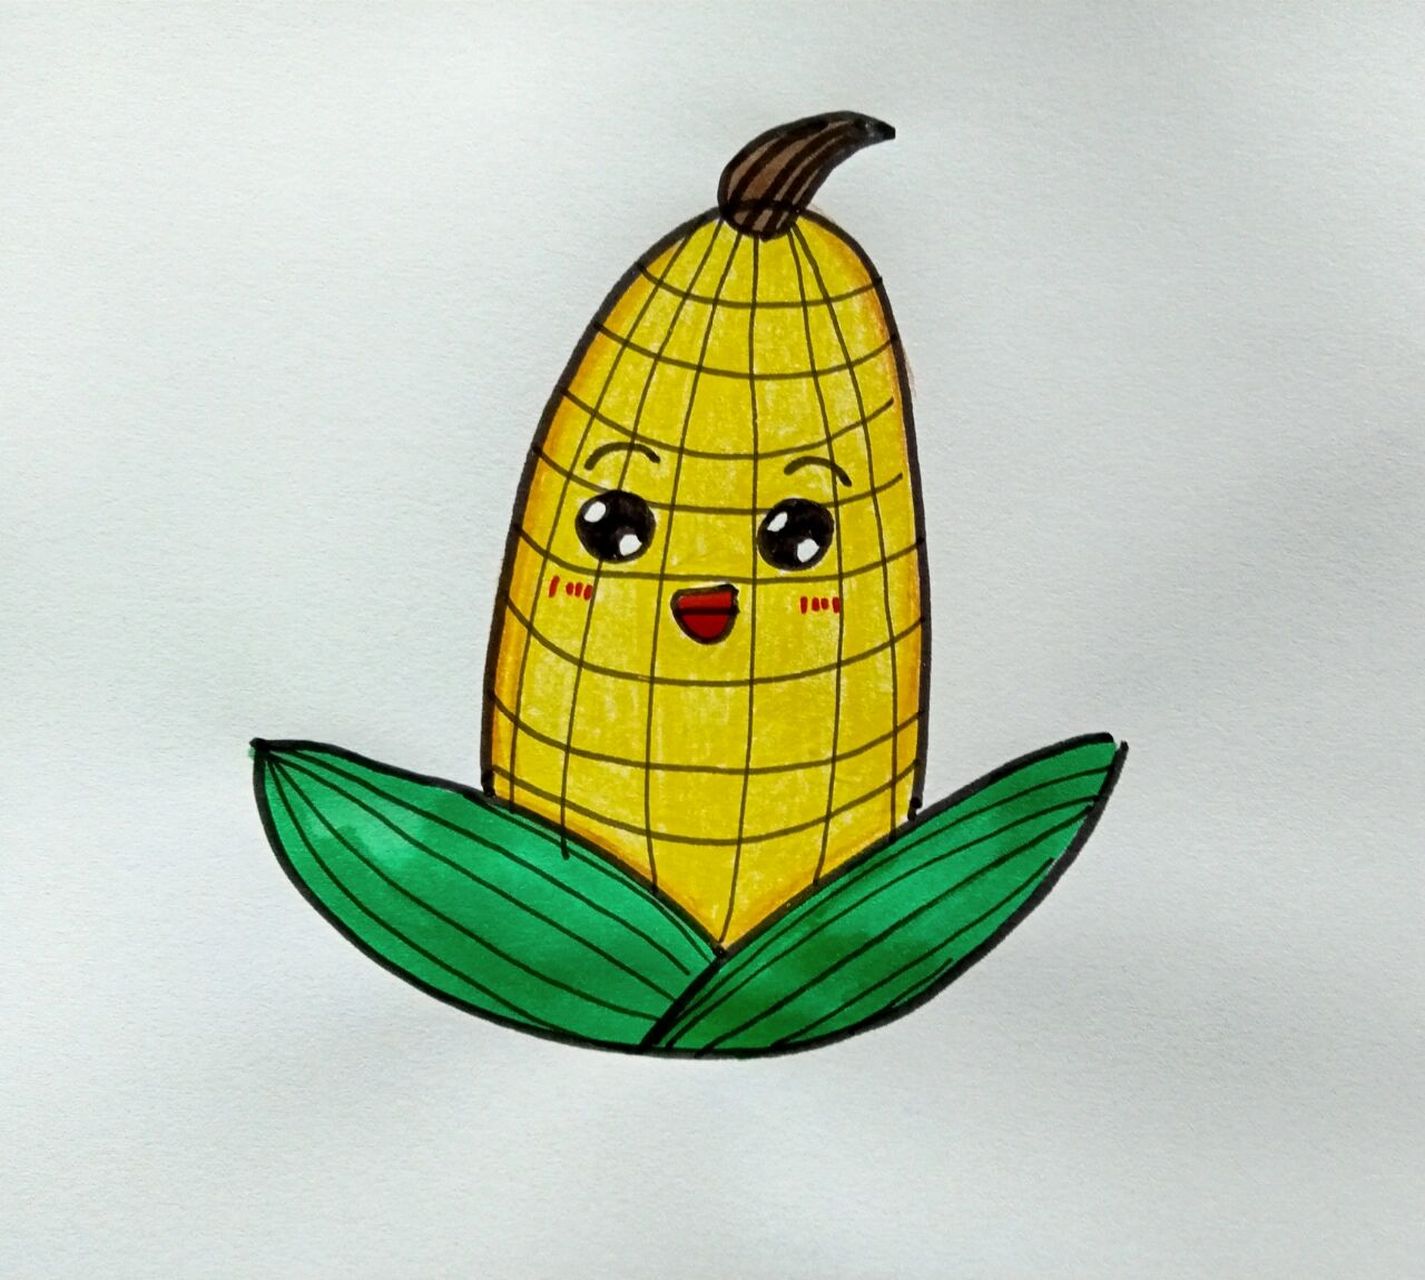 玉米粒简笔画 简单图片